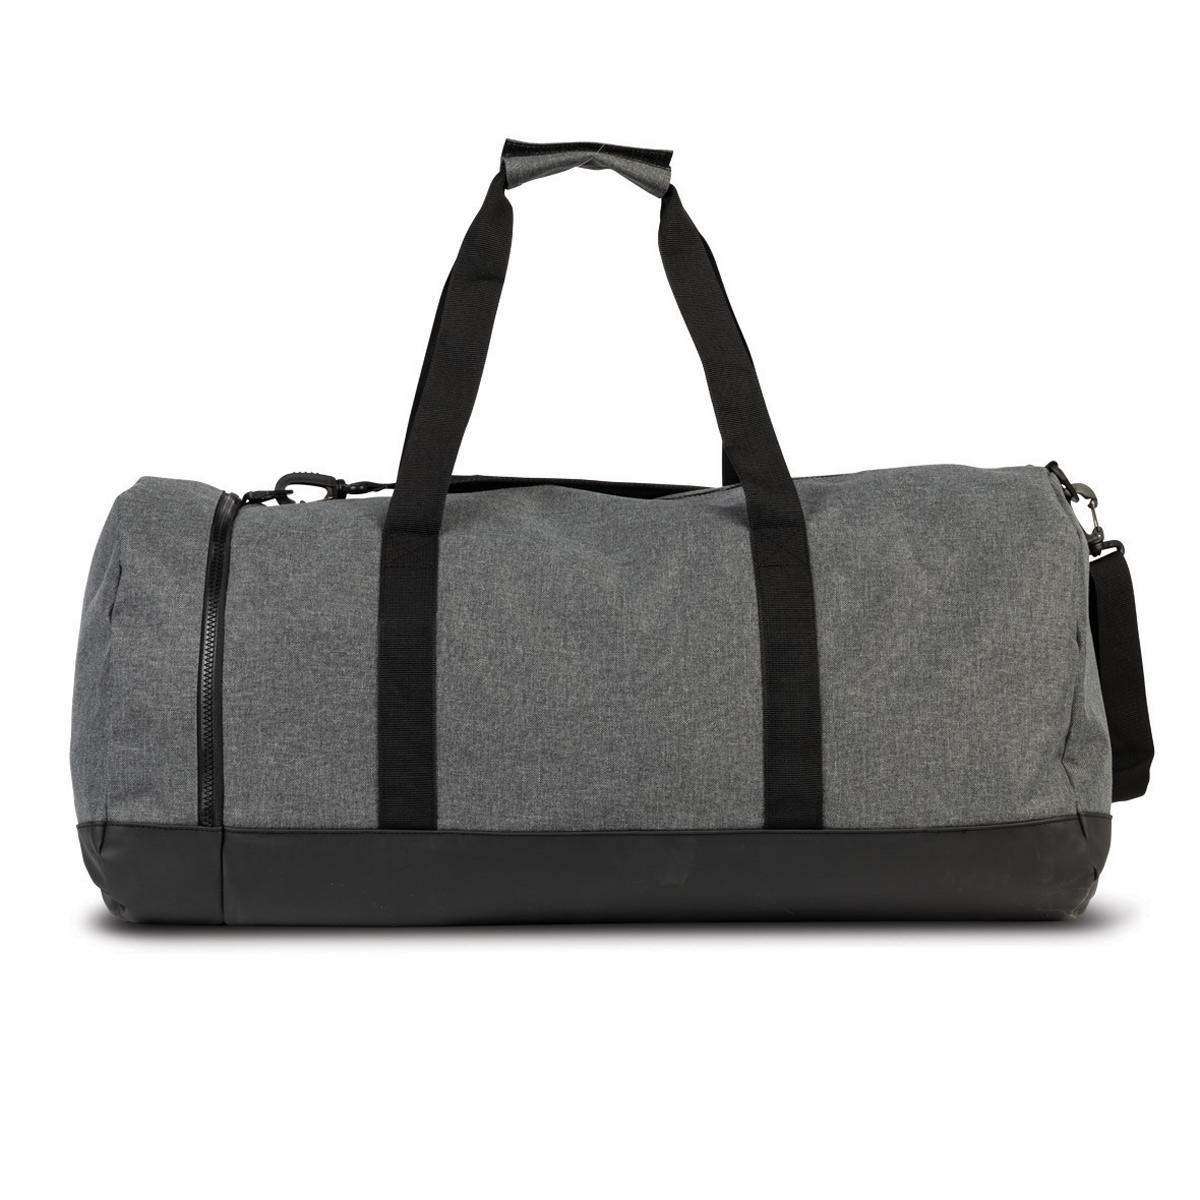 GEWO Sportsbag Spy grey/red